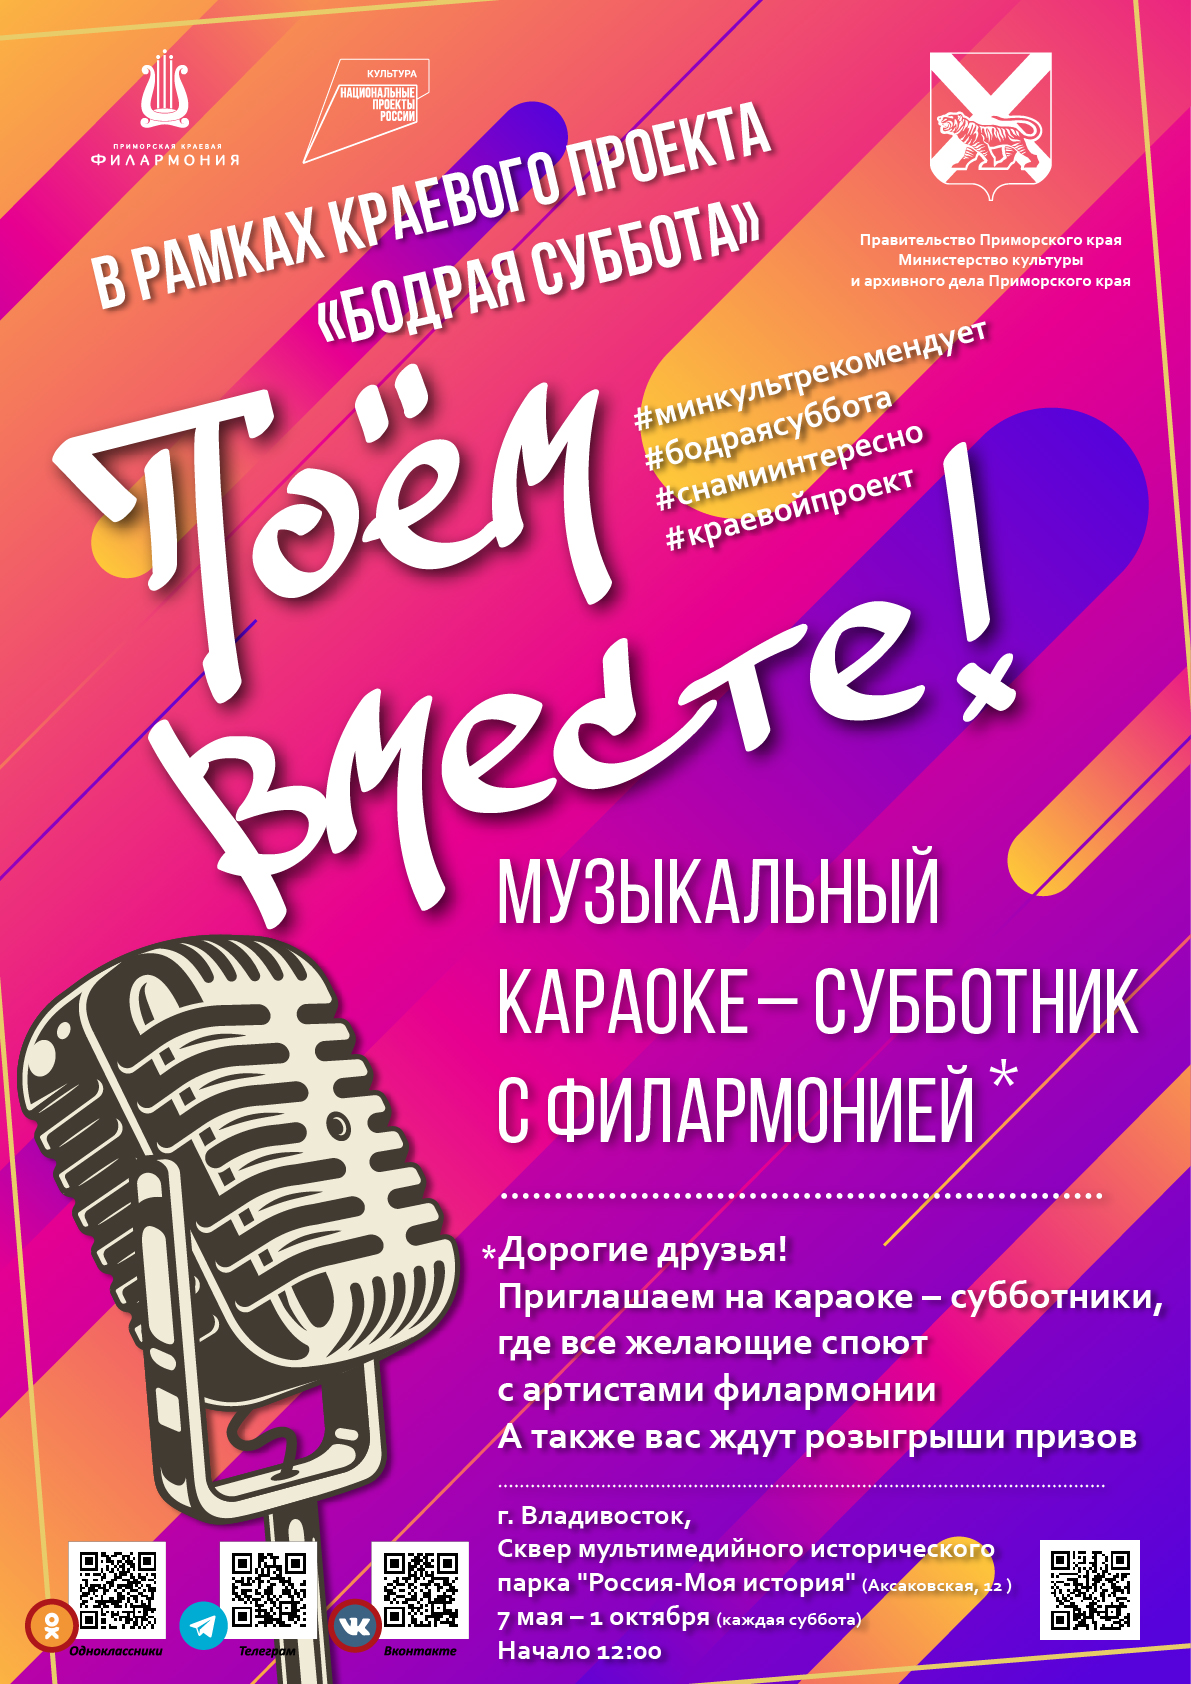 14 мая ПРОЕКТ «Музыкальные караоке-субботники» Концертная программа «Влюбленный май»